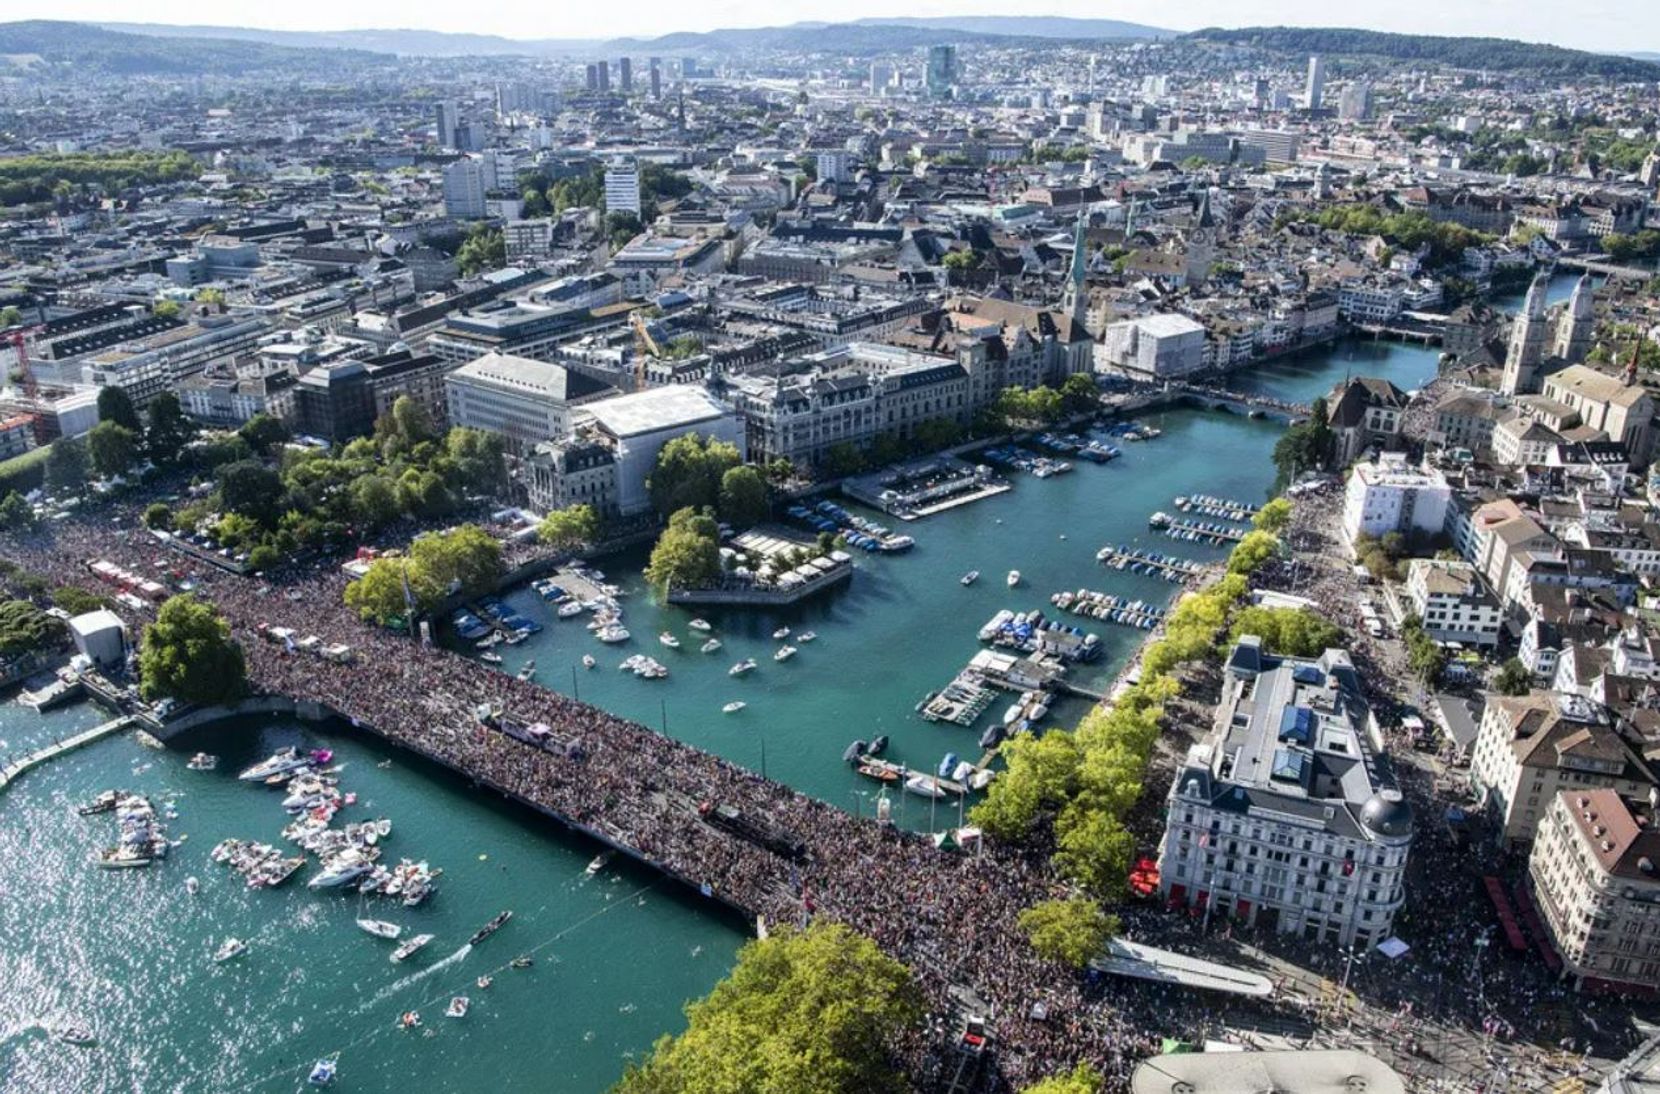 Alles zum kommenden Wochenende, an dem Hunderttausende Raverinnen in Zürich erwartet werden.